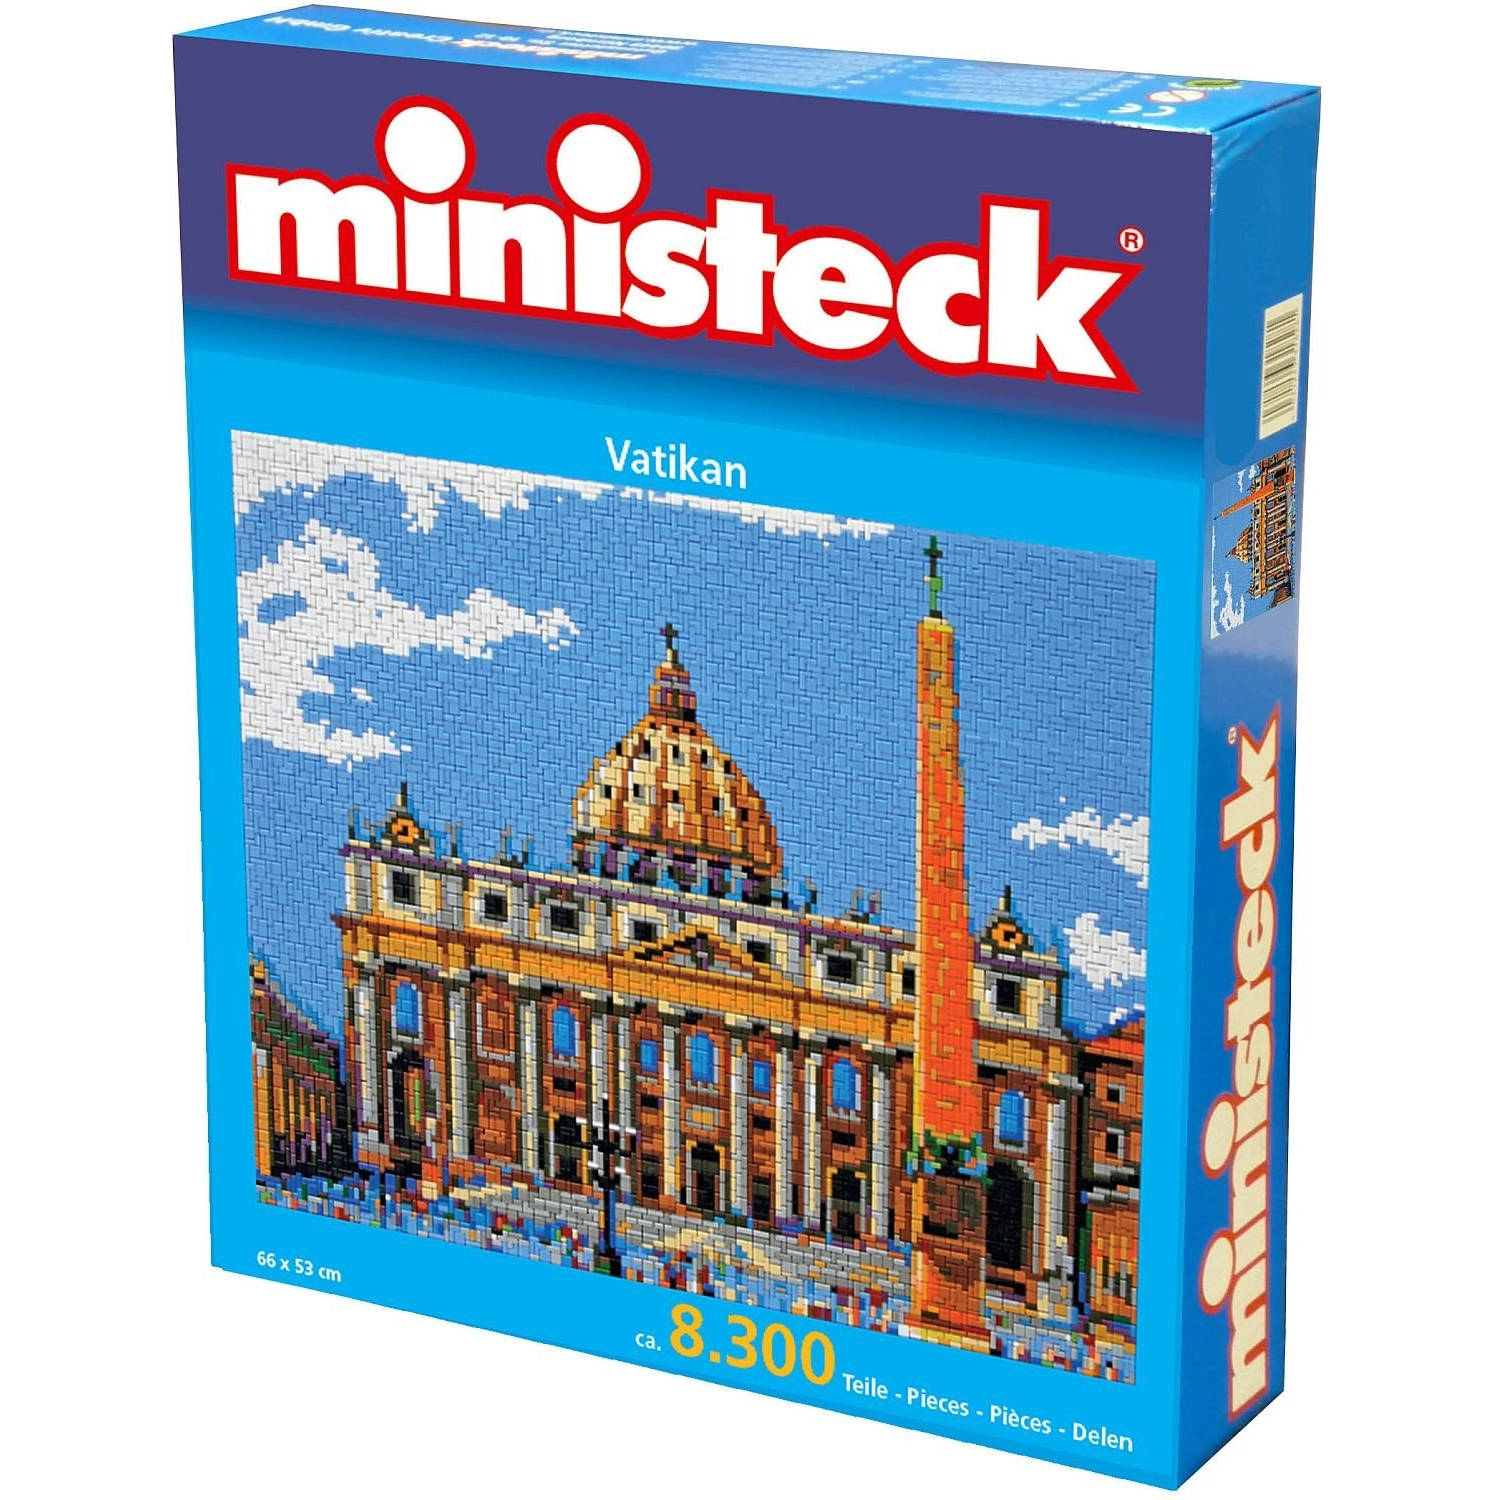 Ministeck Vaticaan